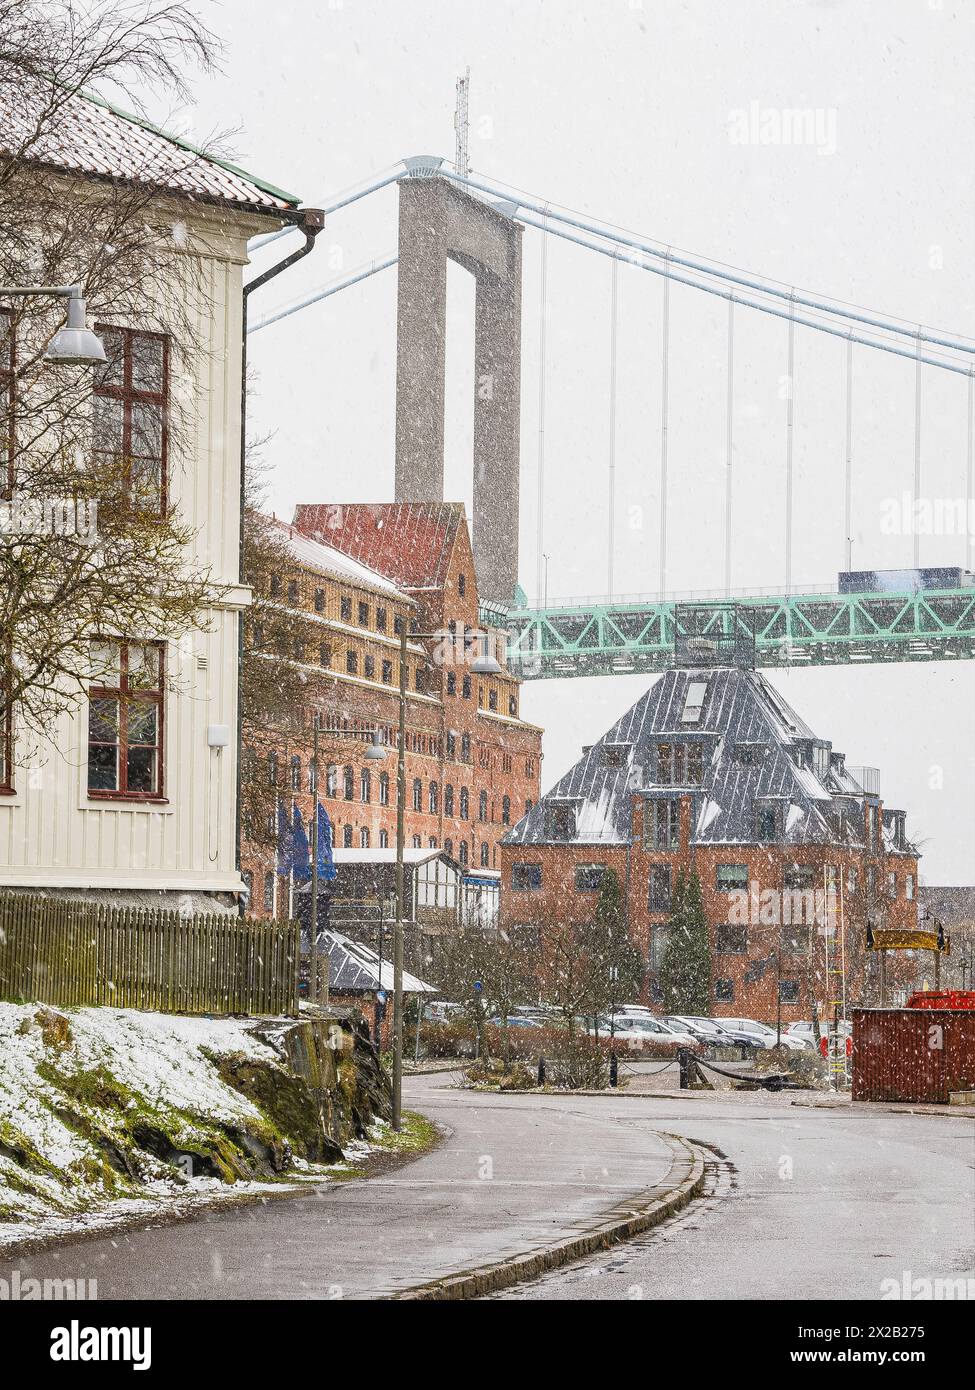 Une scène hivernale sereine se déroule à Gothenburg, tandis que de légères chutes de neige couvrent les rues de la ville, avec la structure impressionnante d'un pont suspendu dominant Banque D'Images